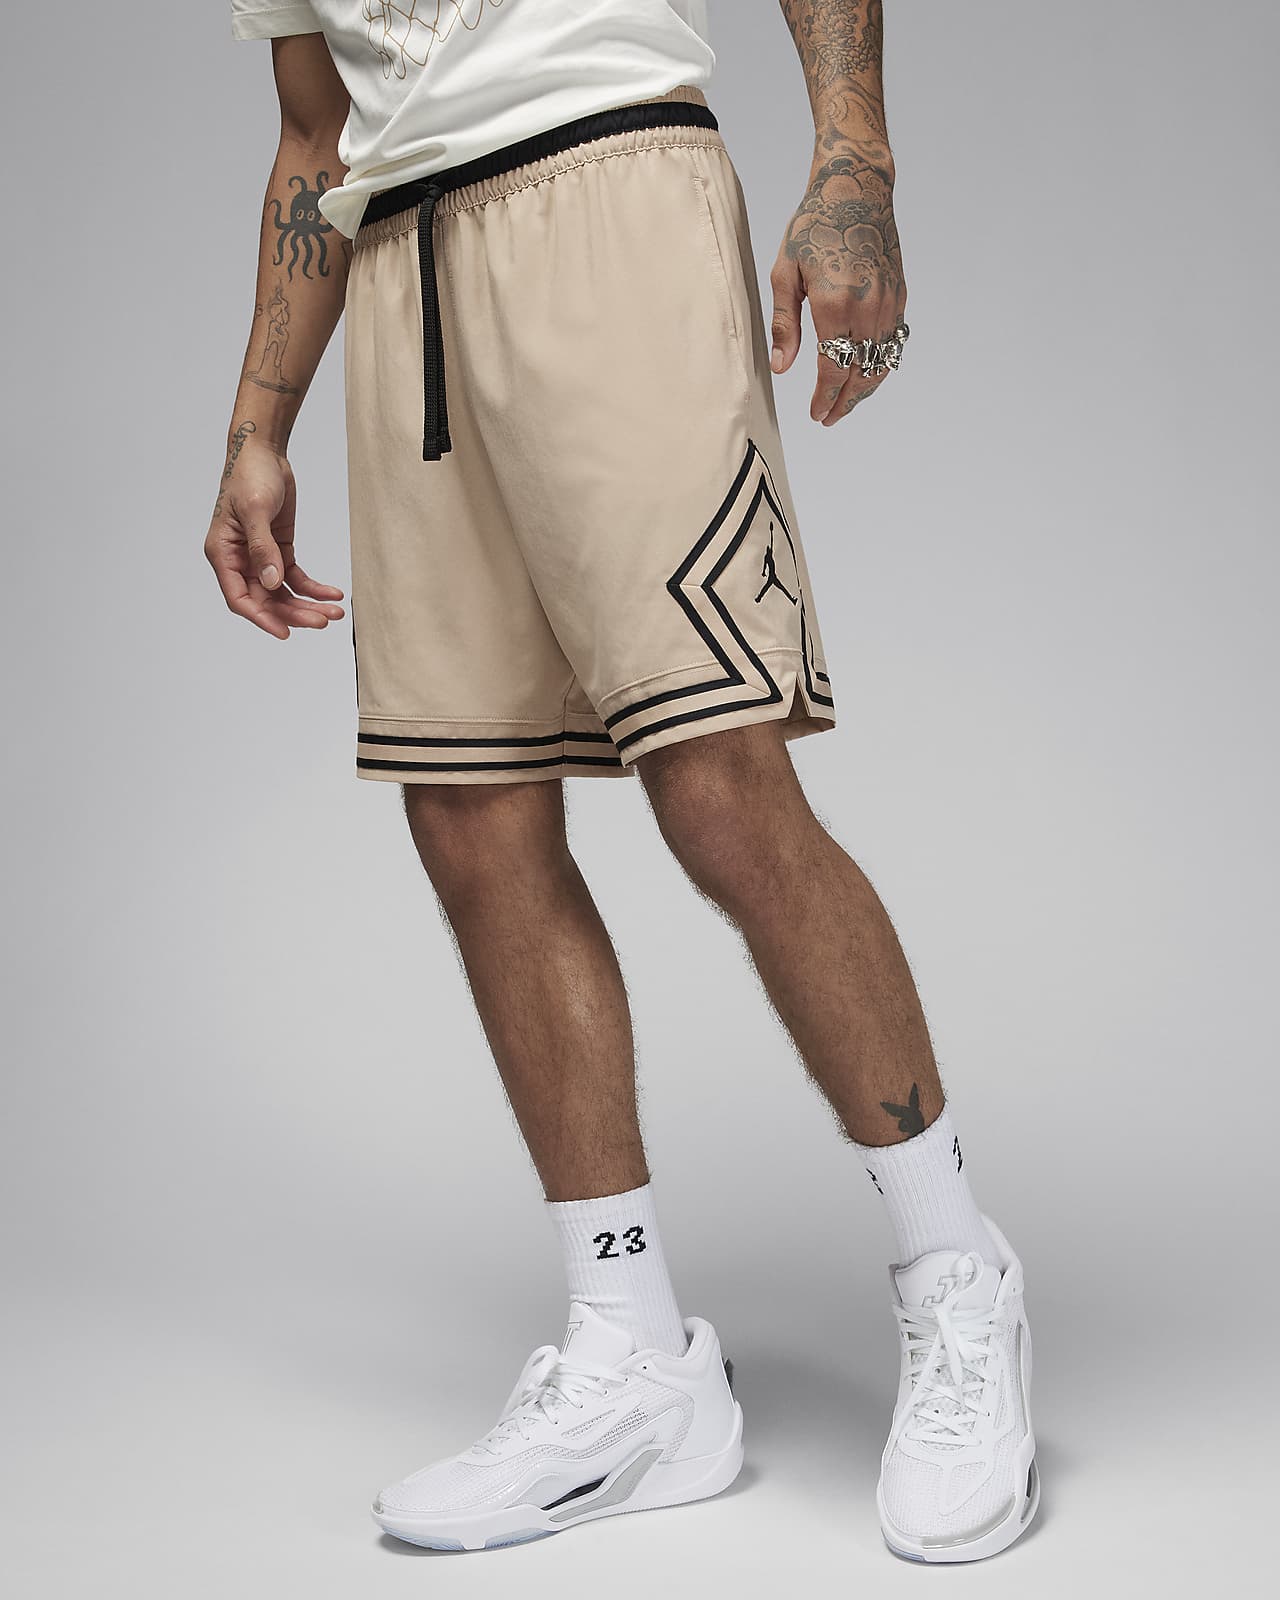 NBA Pants - Jordan, Nike, adidas